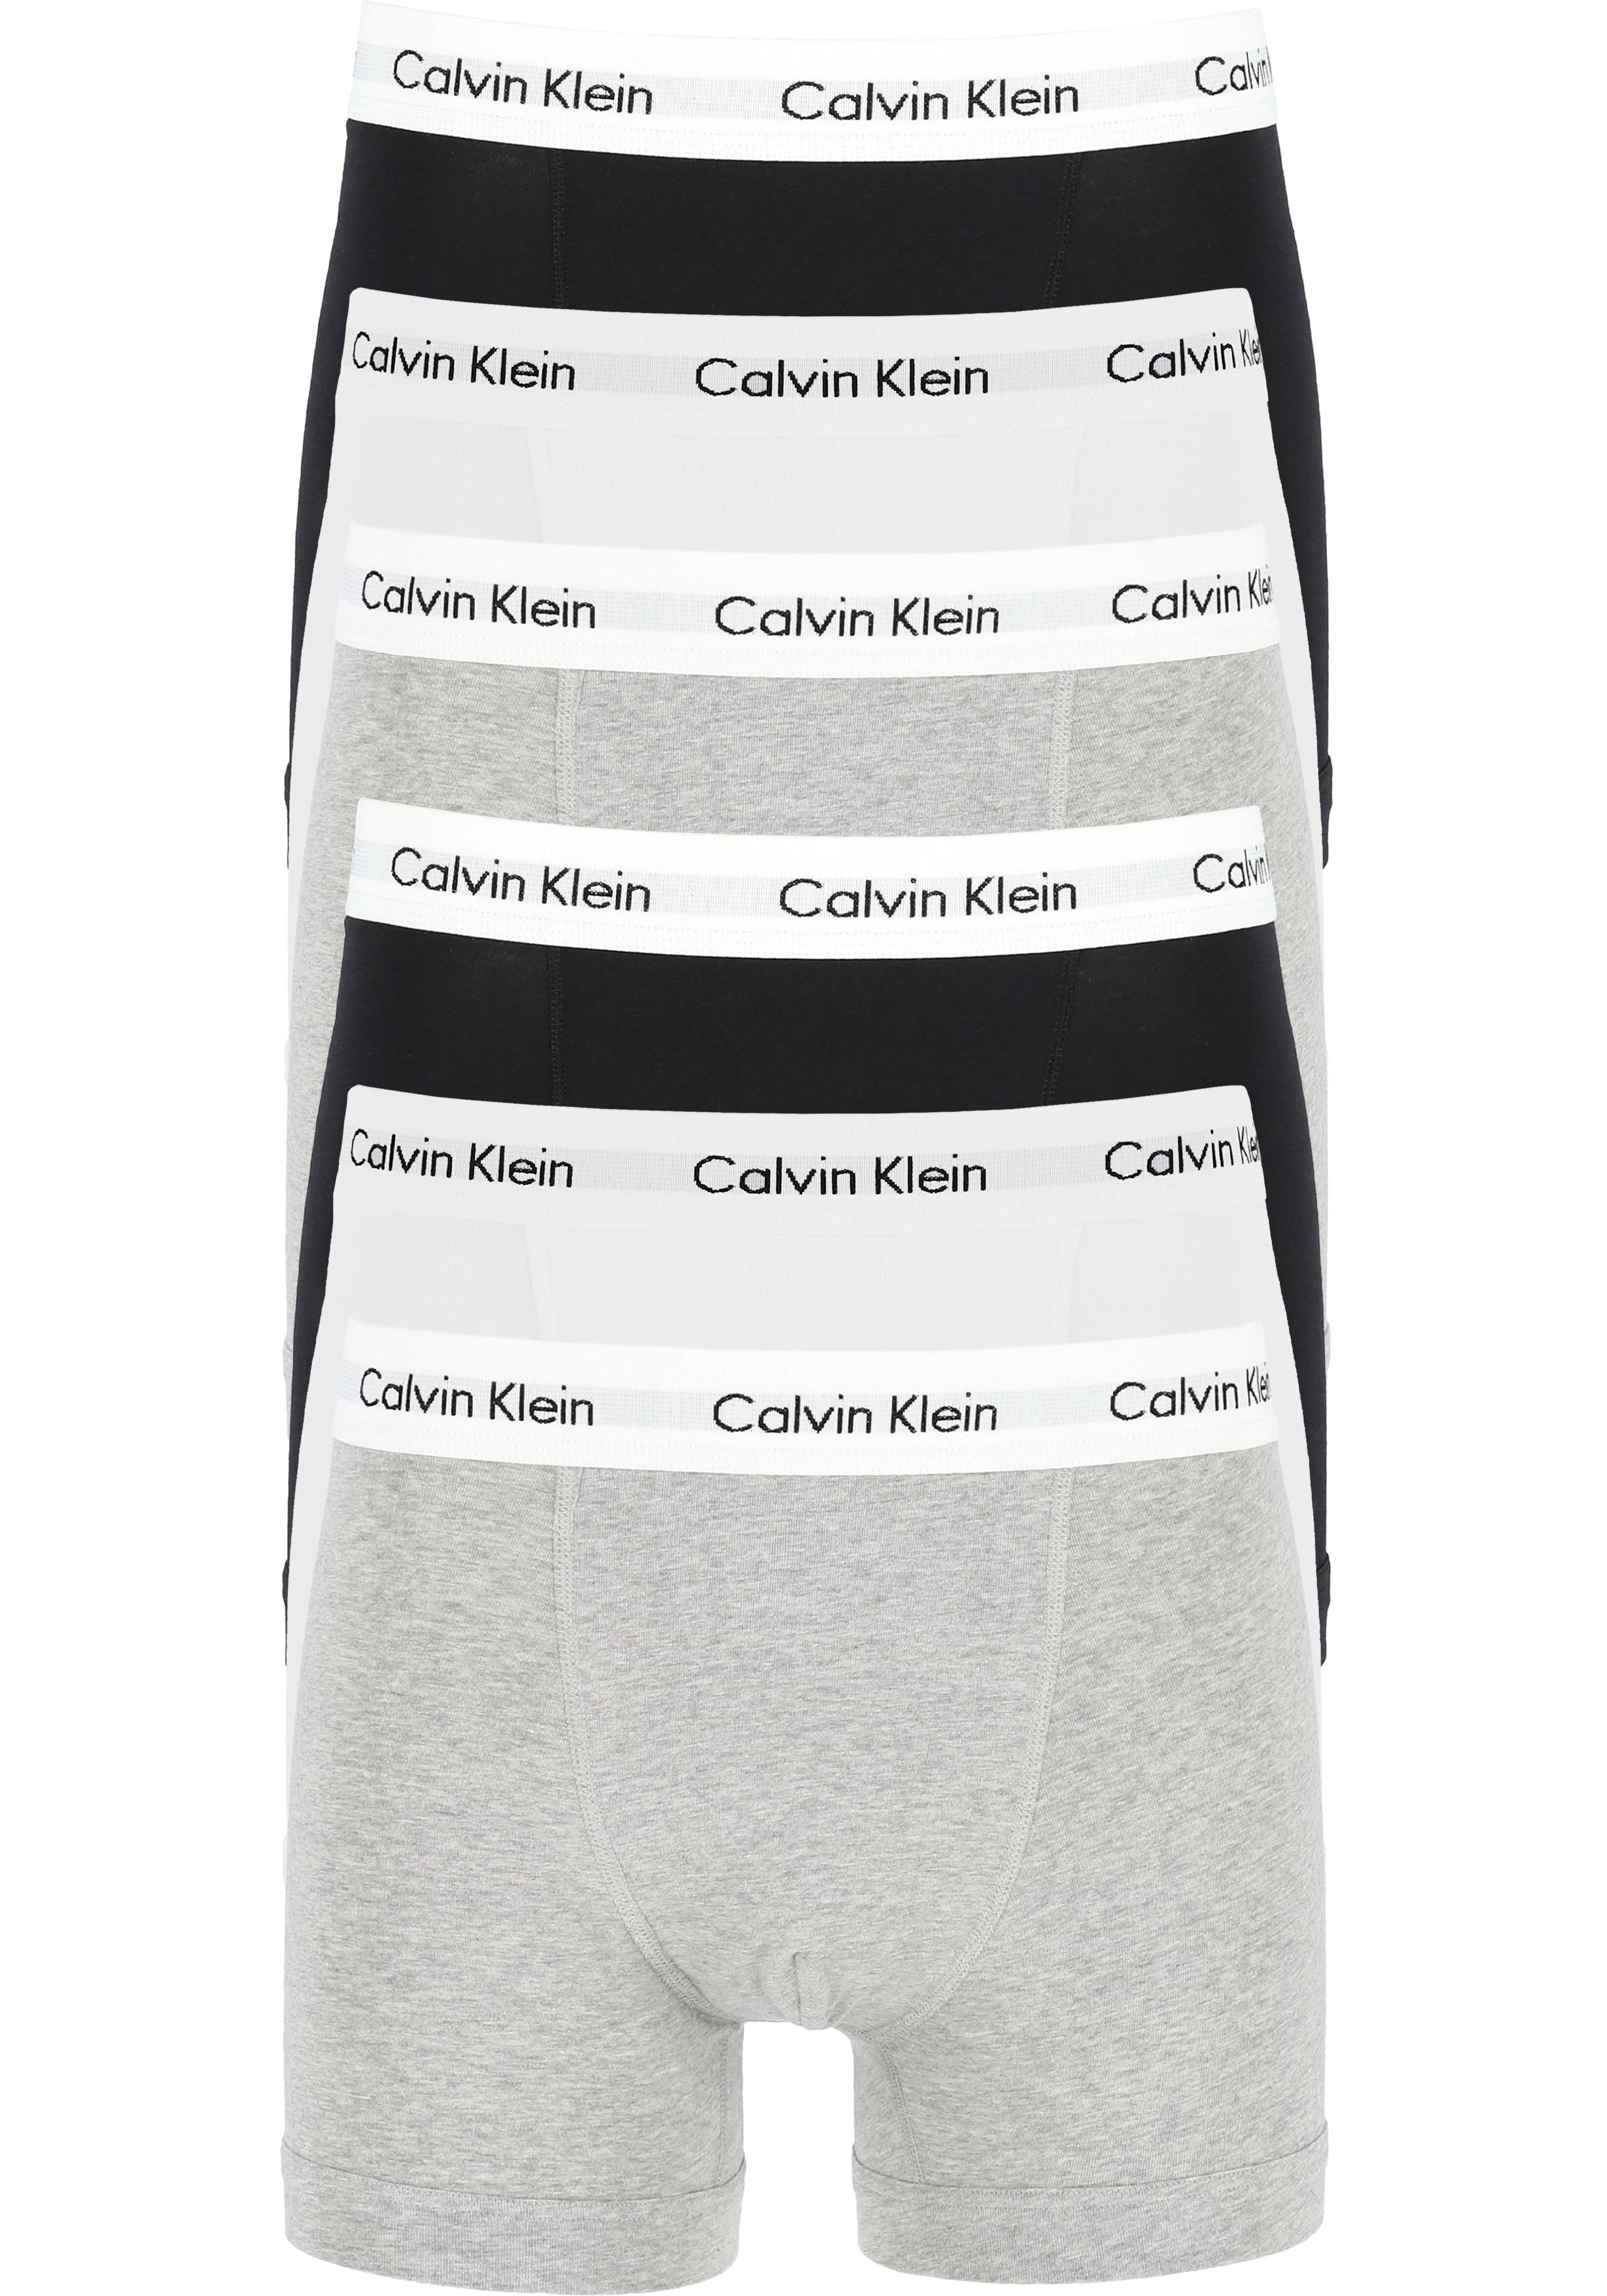 Inwoner druk snijder Actie 6-pack: Calvin Klein trunks, heren boxers normale lengte, zwart,... -  Shop de nieuwste voorjaarsmode